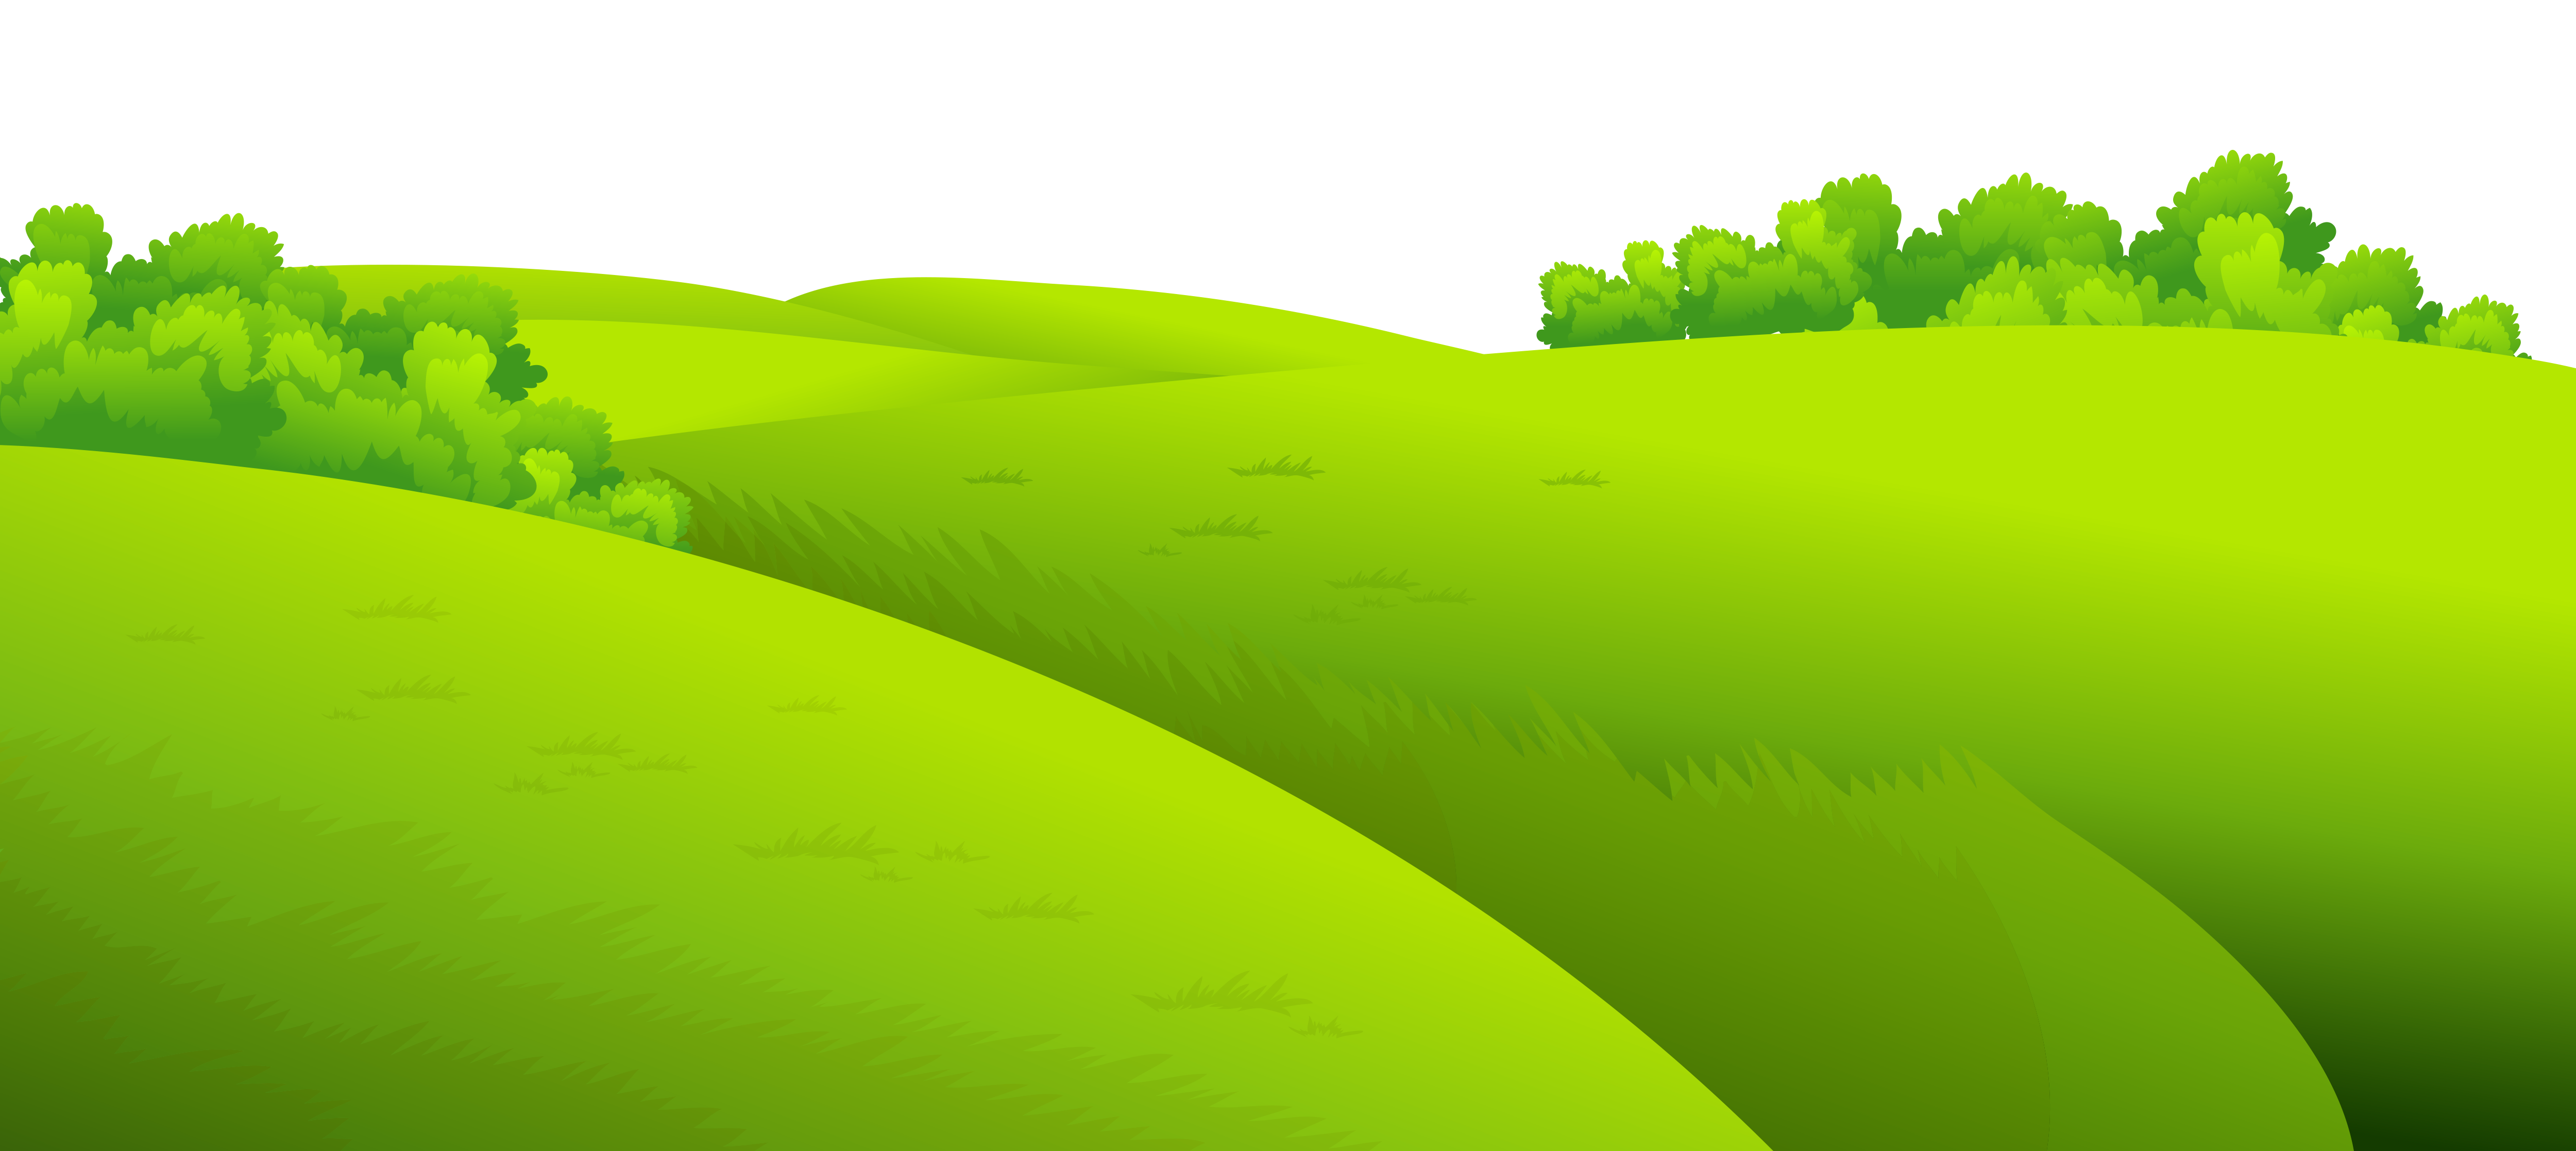 Greengrass Background Clip Art